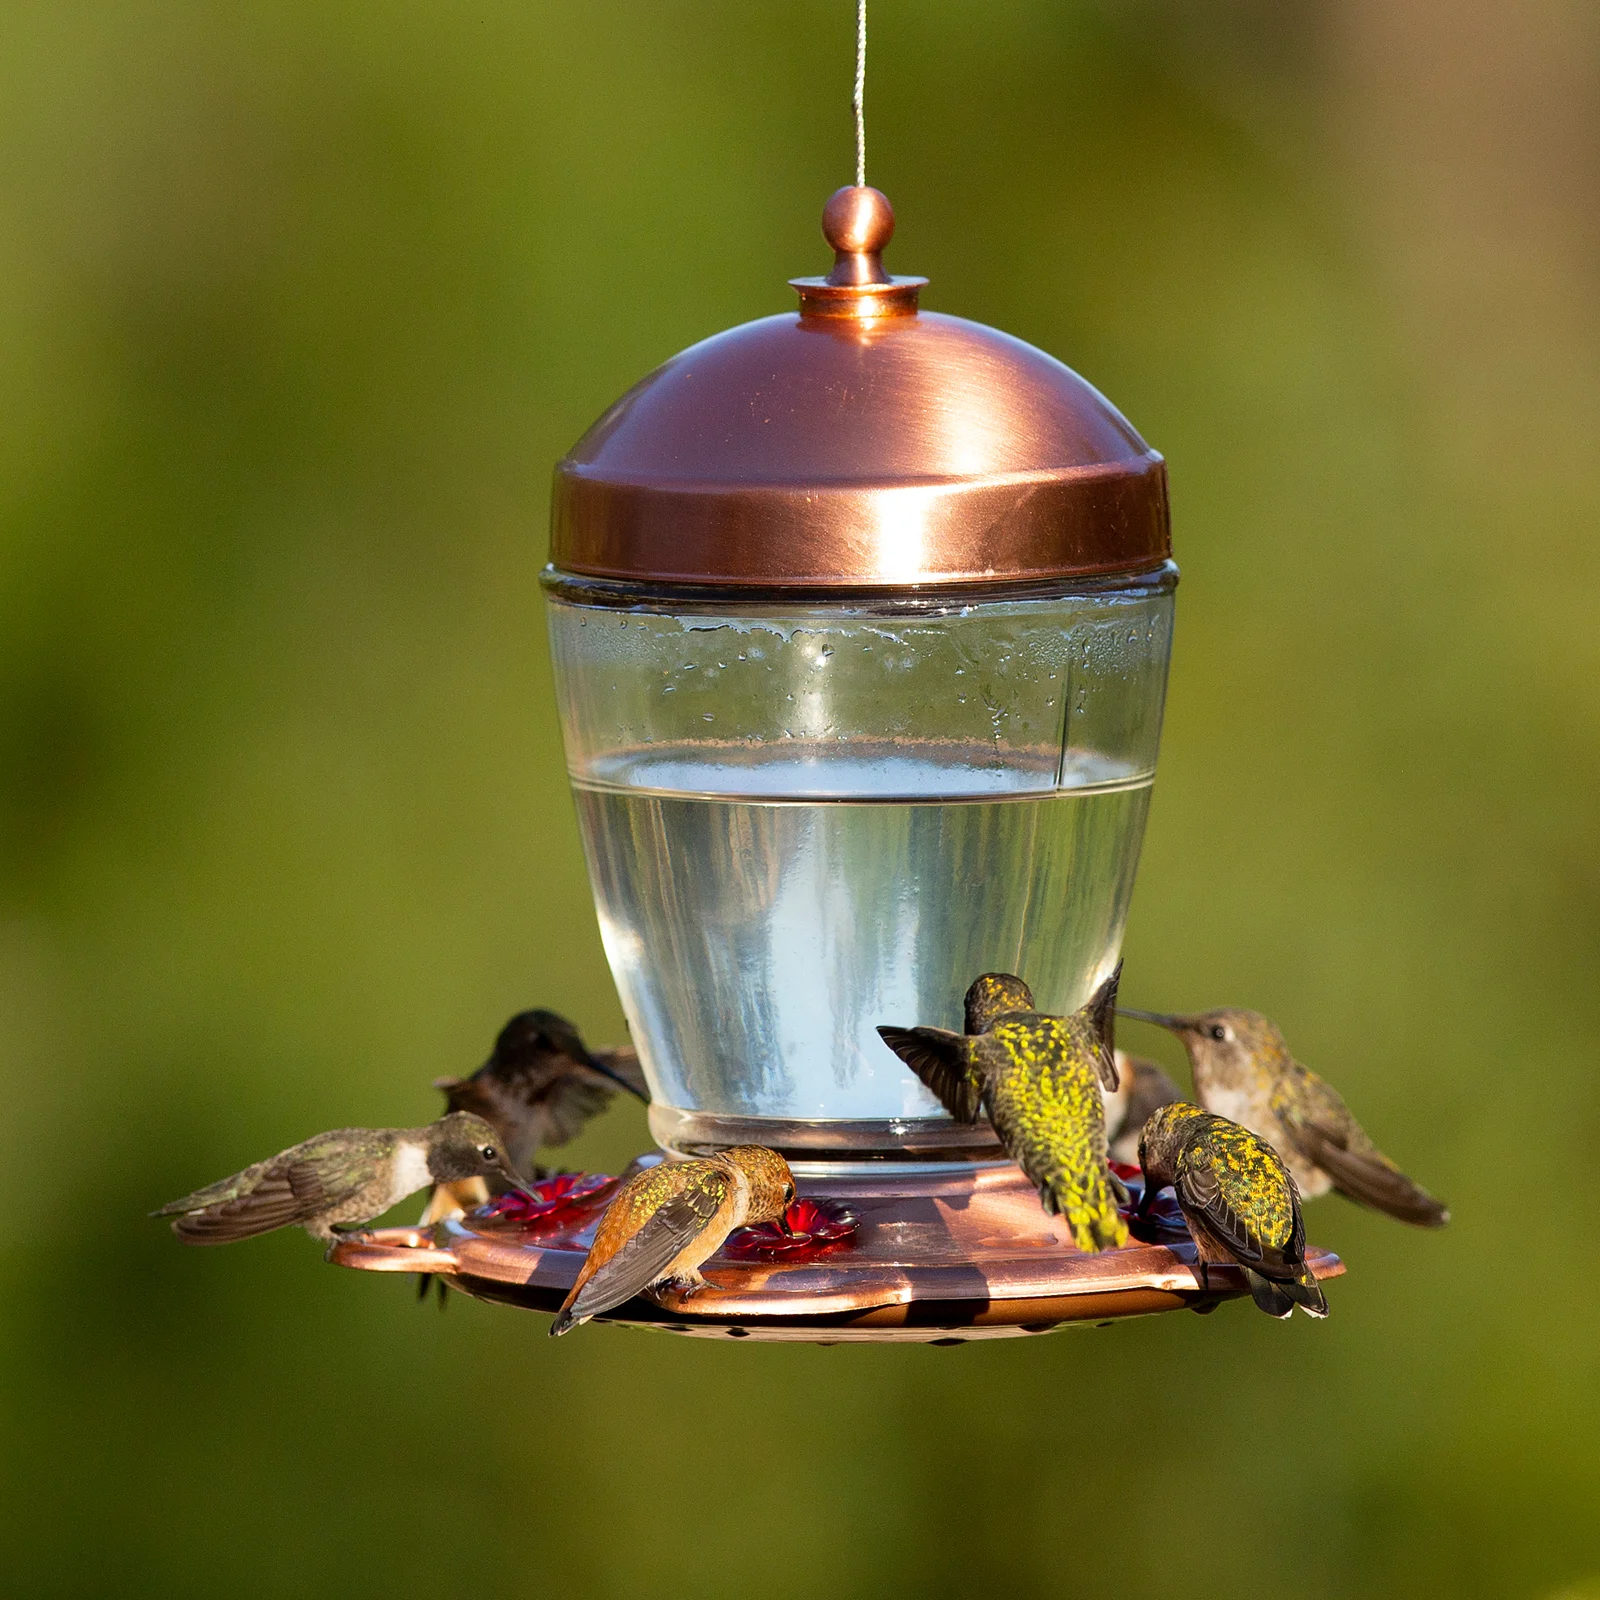 Humming birds at a nectar feeder